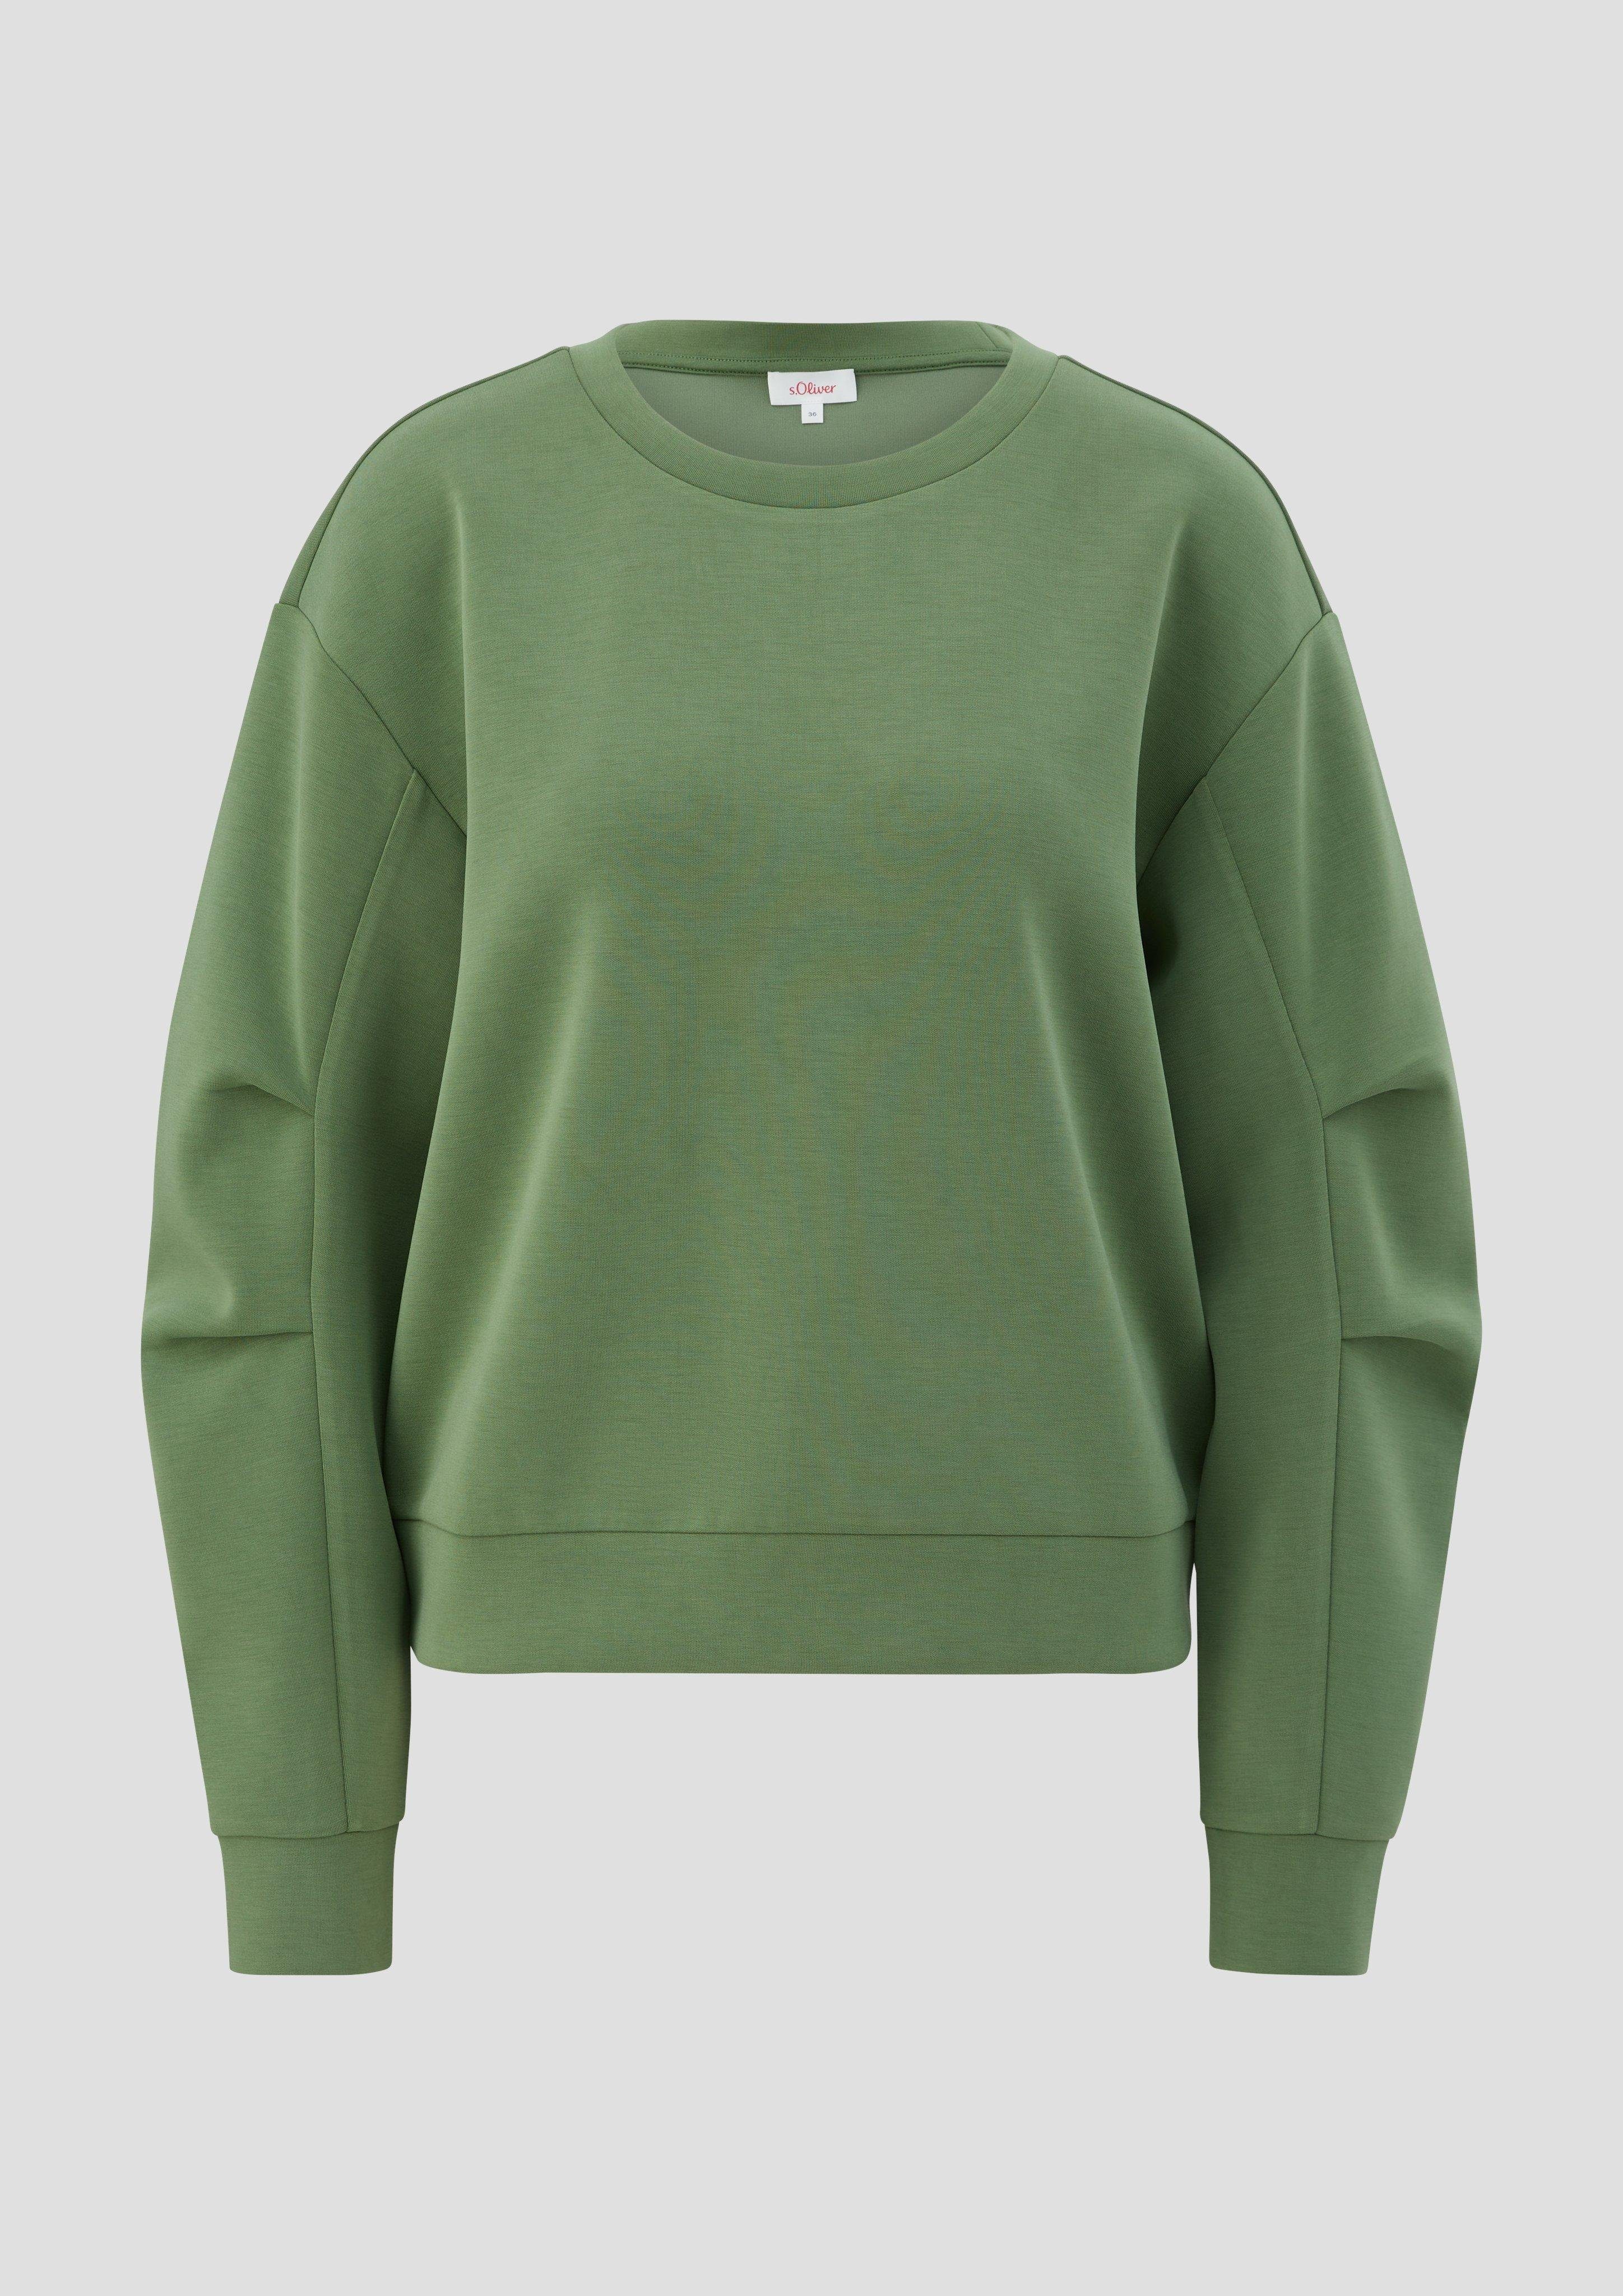 Scuba grün s.Oliver aus Sweatshirt Sweatshirt